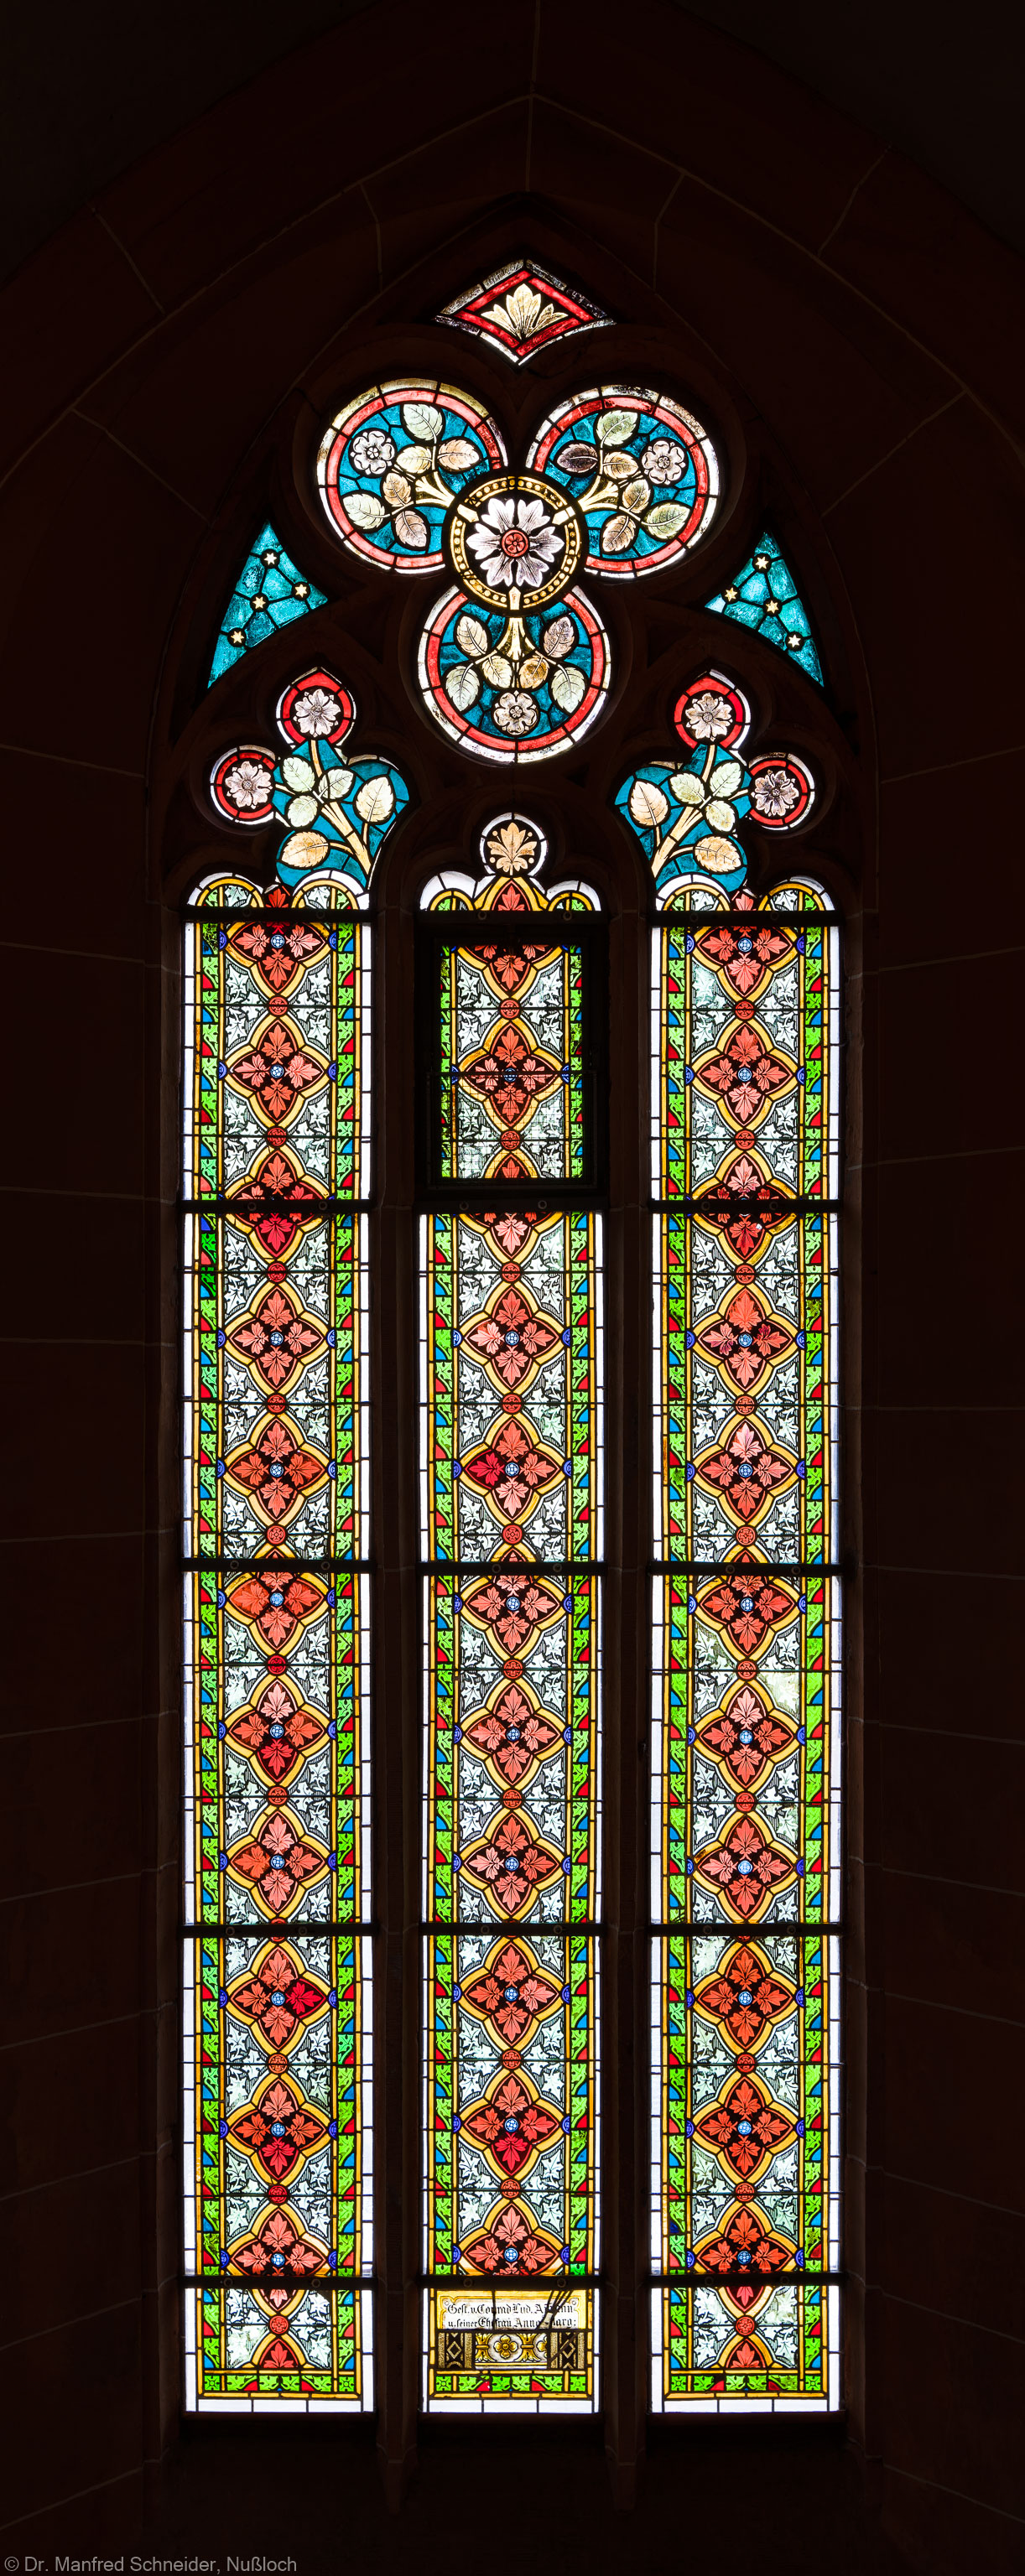 Heidelberg - Heiliggeistkirche - Südschiff - 2. Joch, von Westen aus gezählt - Gesamtaufnahme des Ornamentfensters (aufgenommen im Oktober 2015, am Nachmittag)